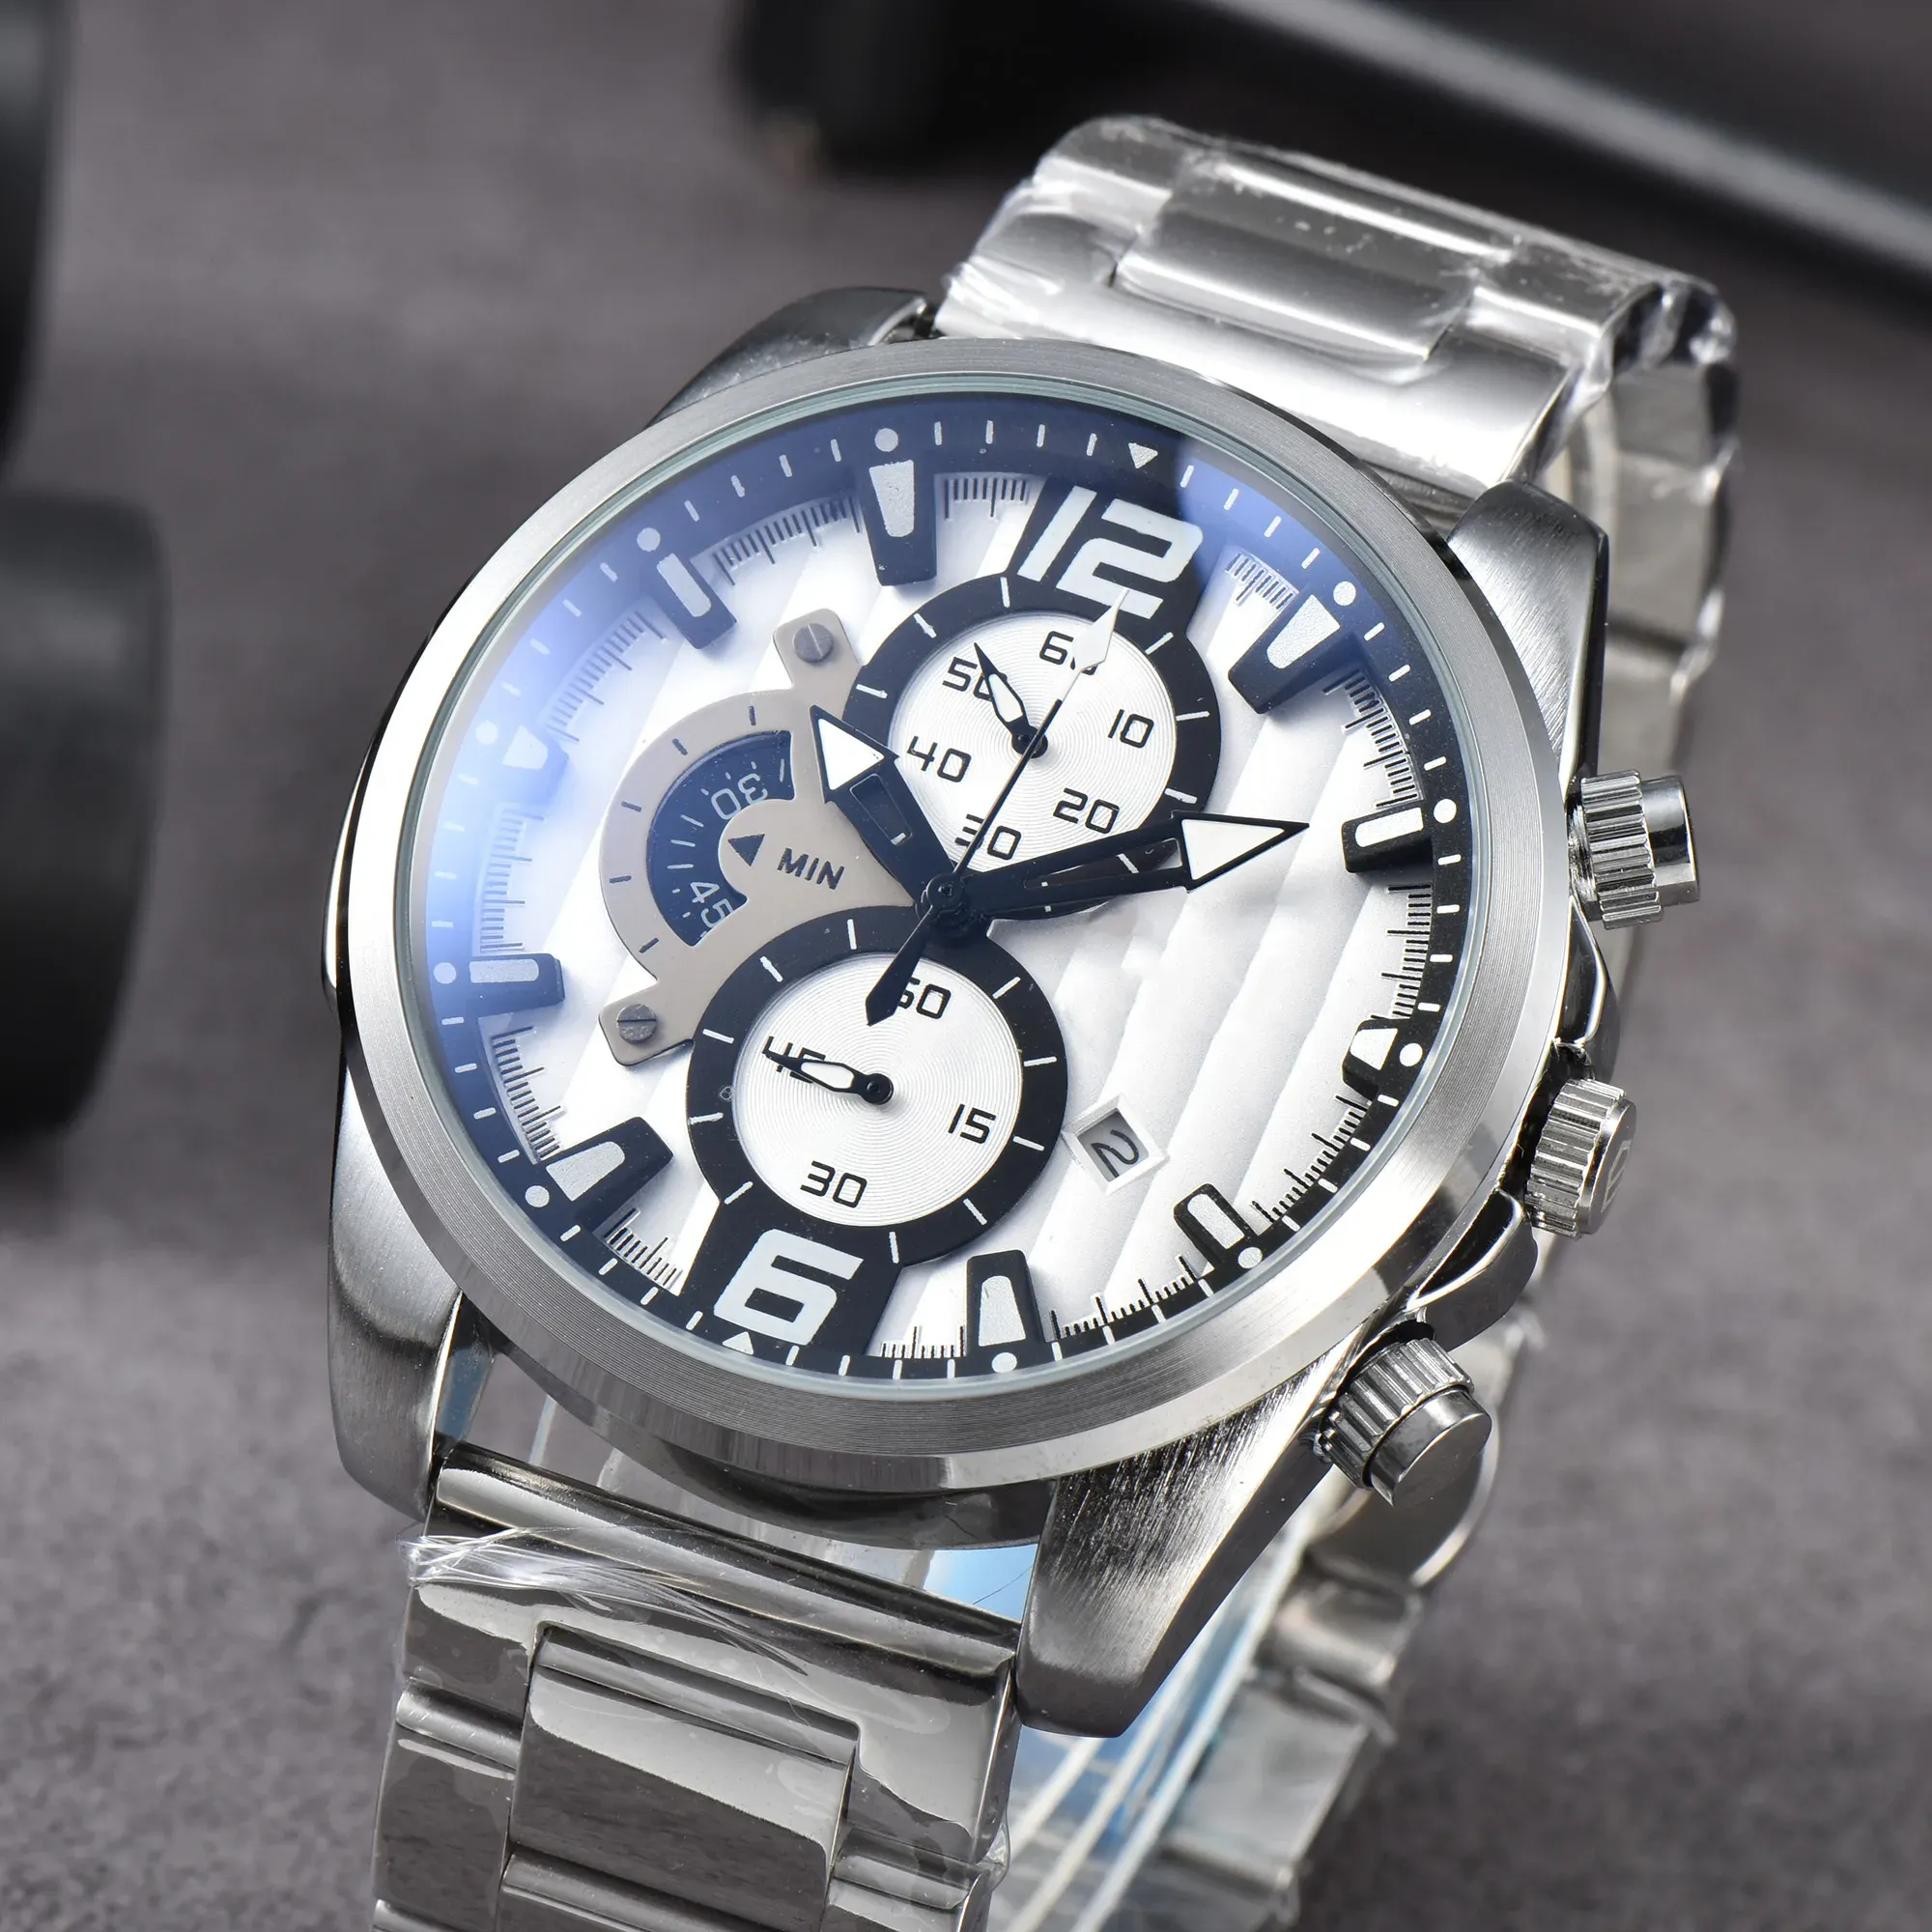 Новые мужские часы, часы высокого качества, 44 мм, кварцевые часы с кожаным ремешком, модные наручные часы, часы с механизмом, дизайнерские часы, мужские часы с коробкой и часами из сапфирового стекла